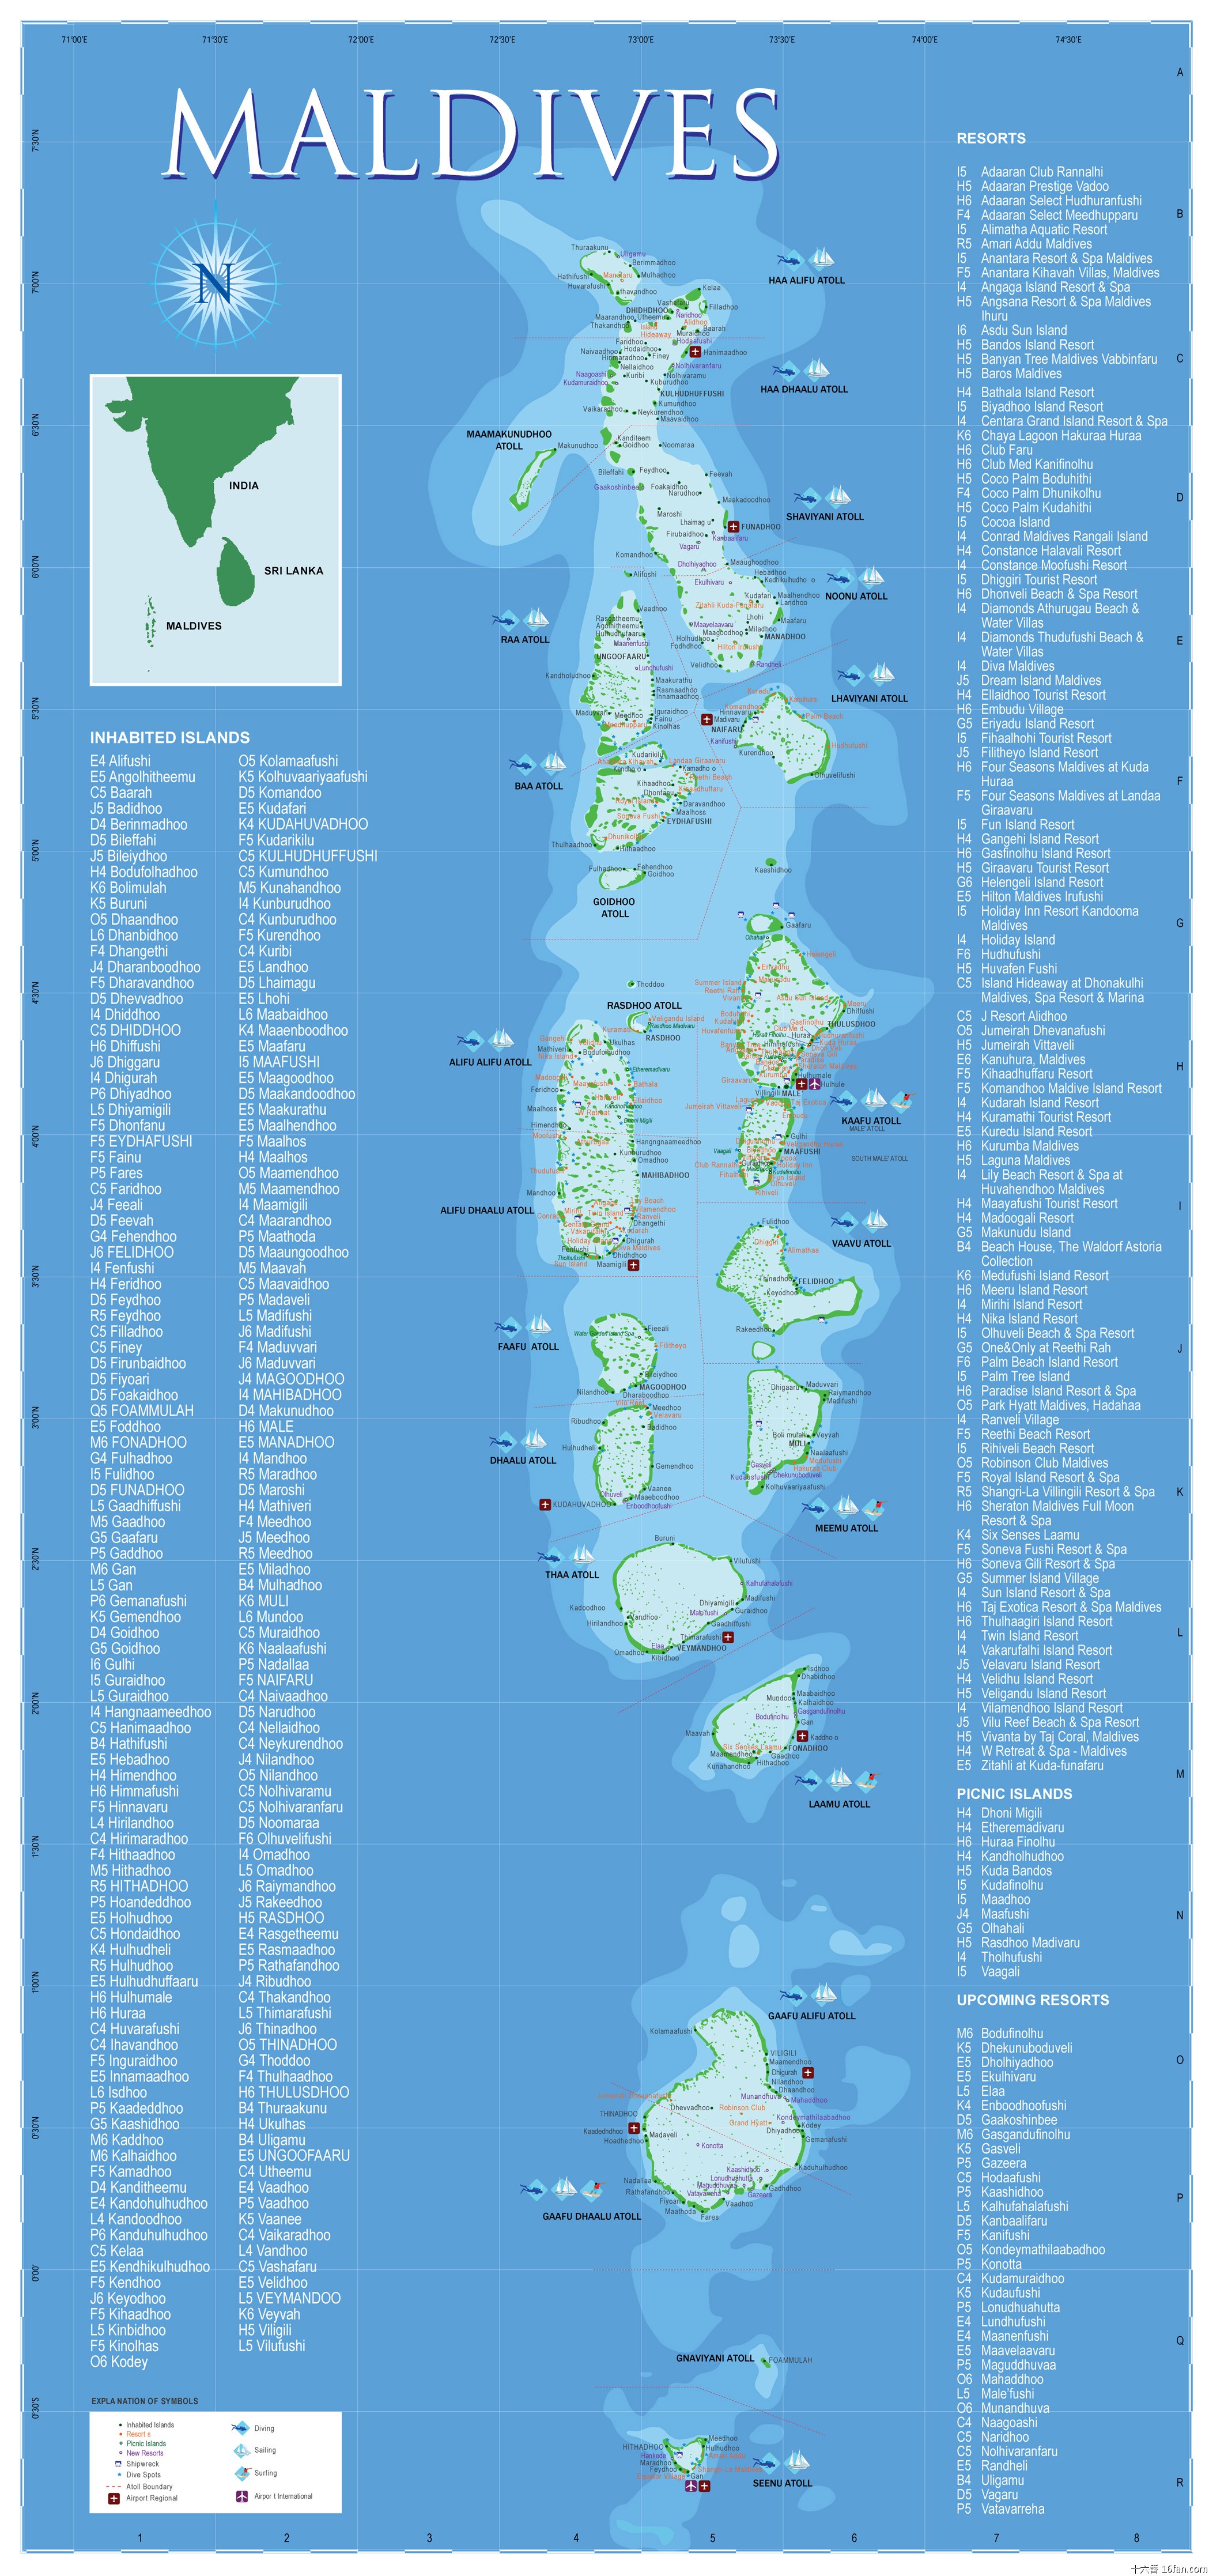 马尔代夫地形特征图片